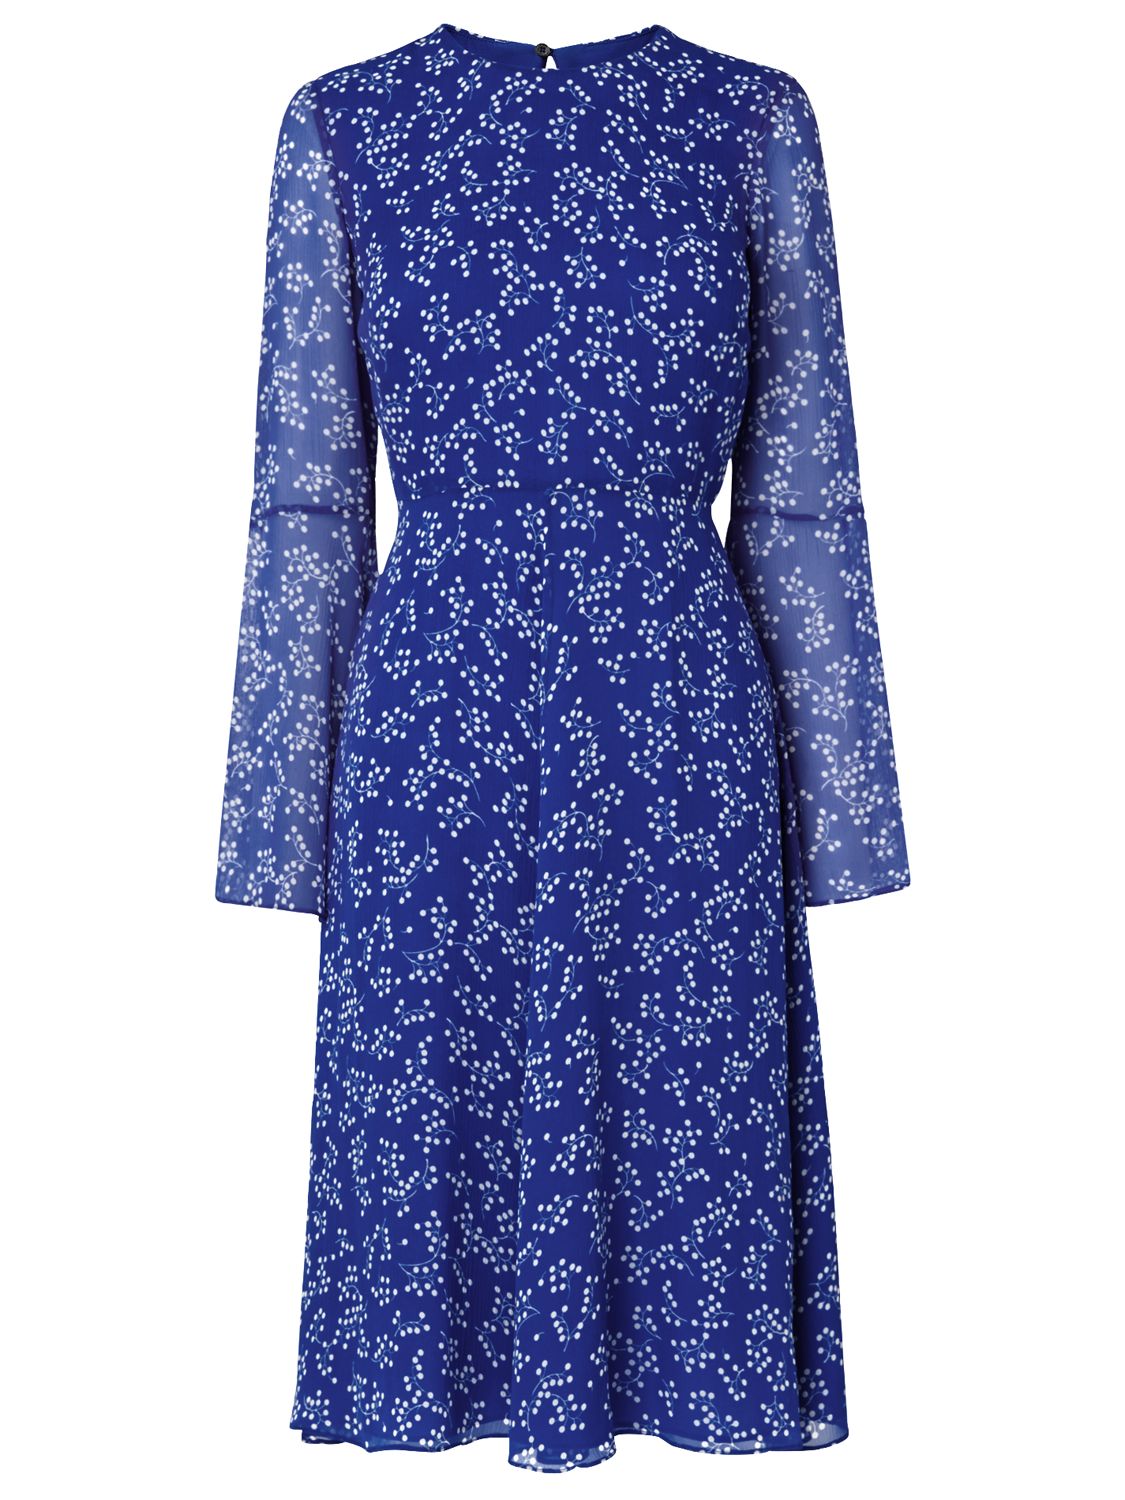 L.K. Bennett Cecily Silk Dress, Blue, 16